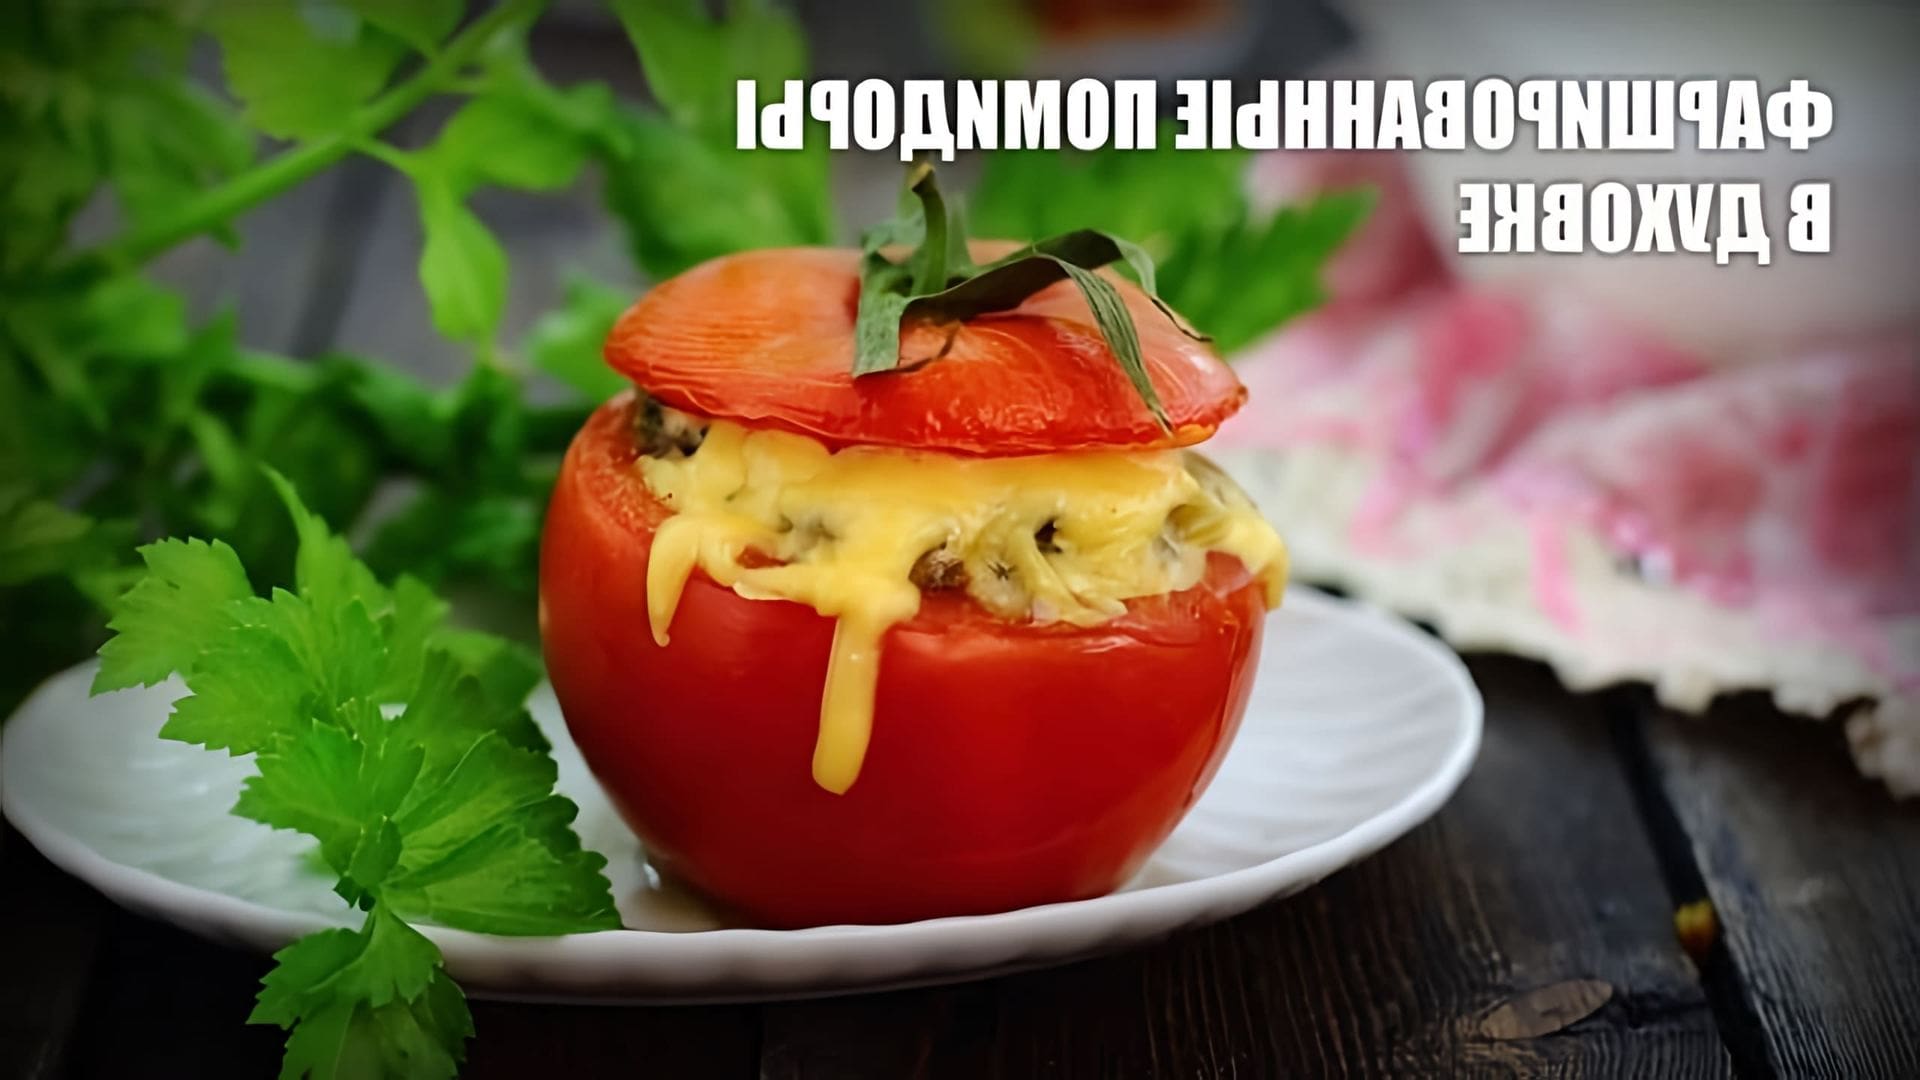 В этом видео демонстрируется рецепт приготовления фаршированных помидоров в духовке